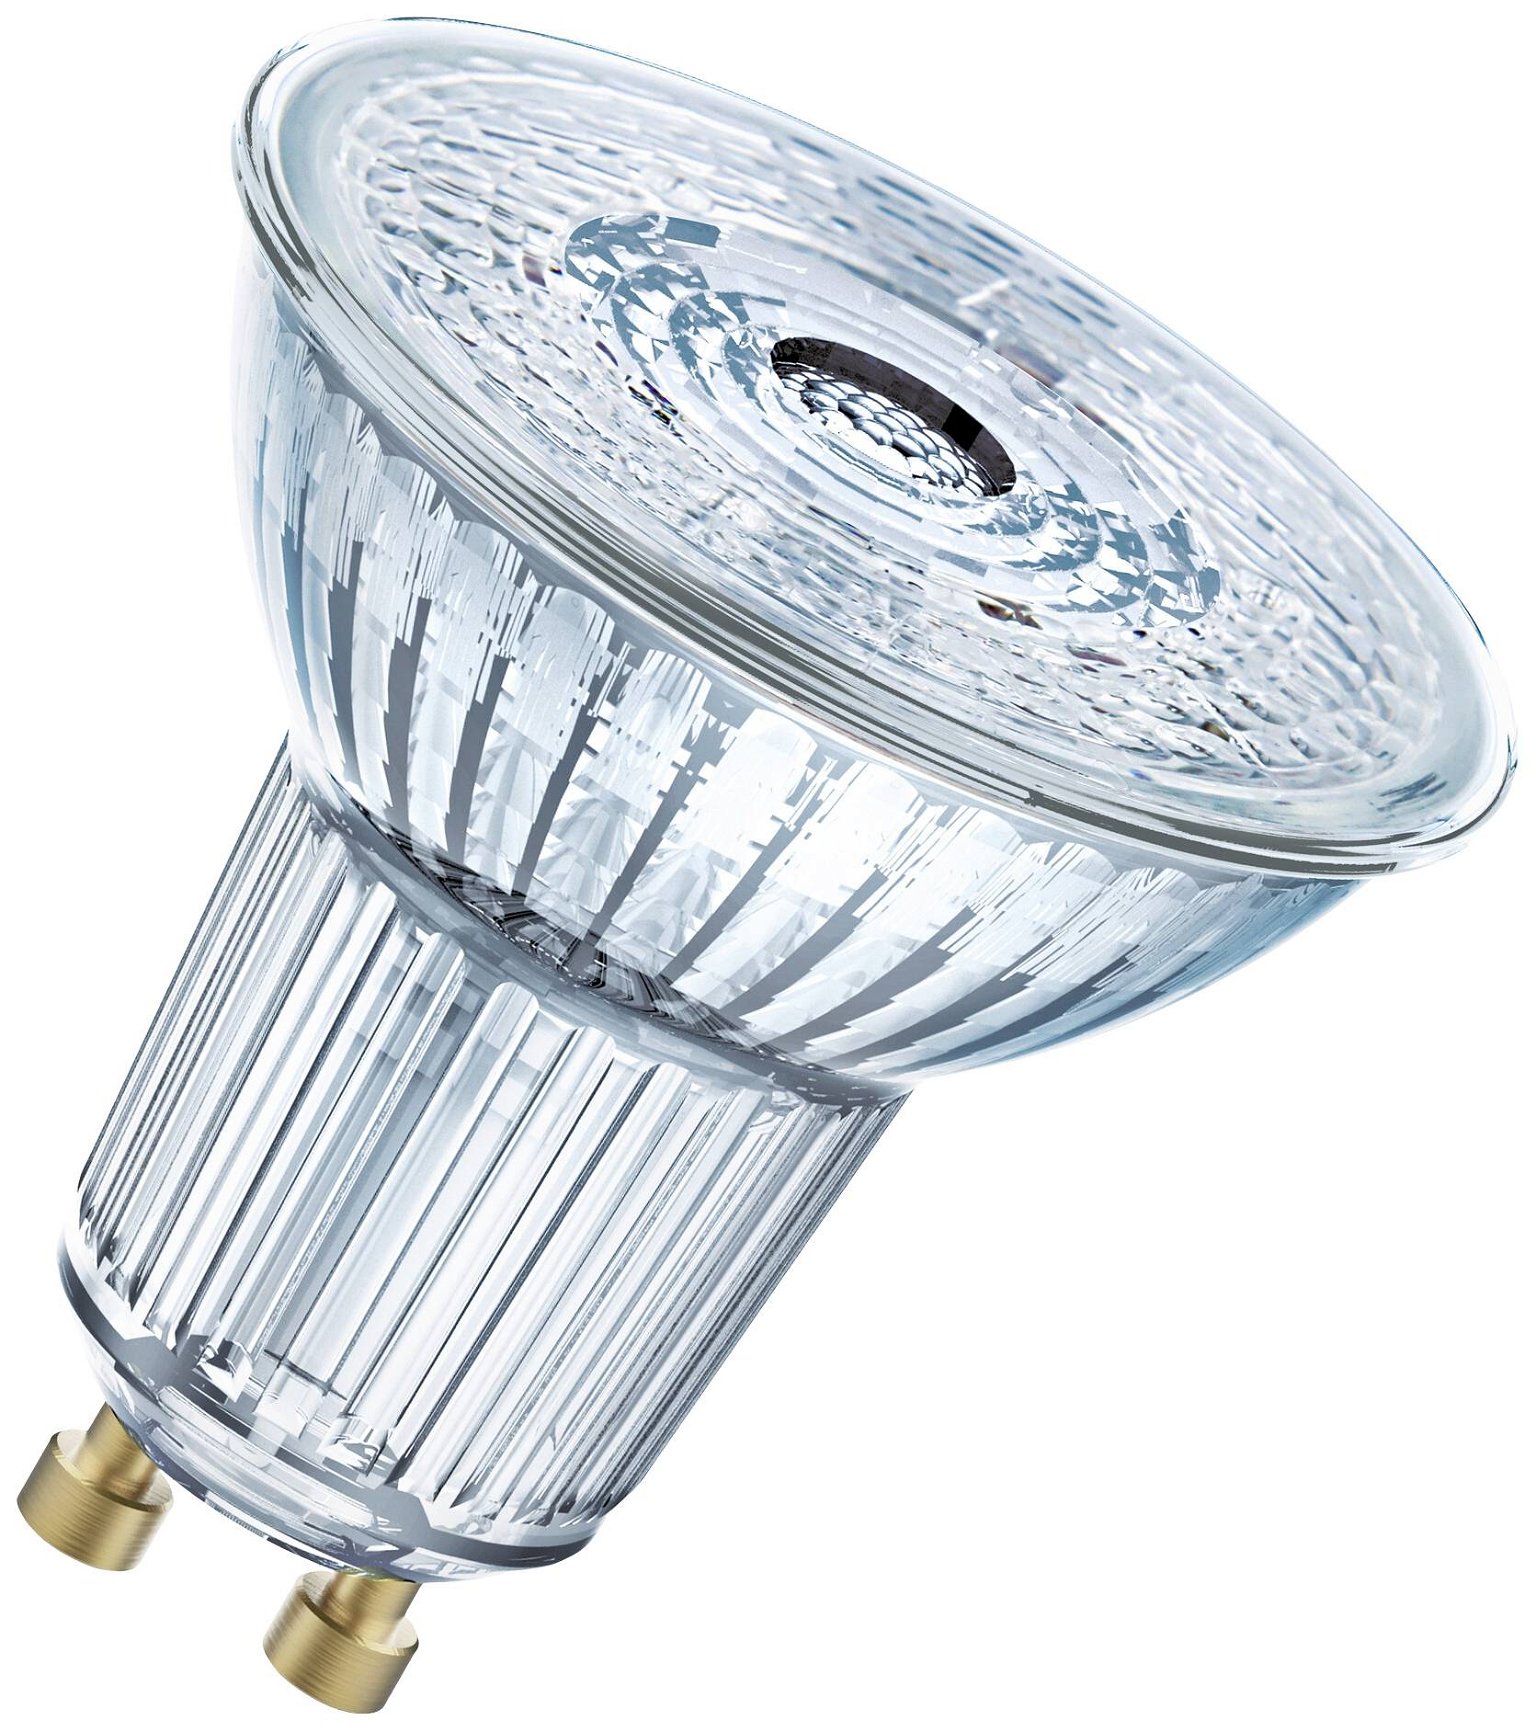 LED lemputė OSRAM, GU10, PAR16 50, reflektorinė, 4,5W, 4000K, 36°, 350 lm, dimeriuojama